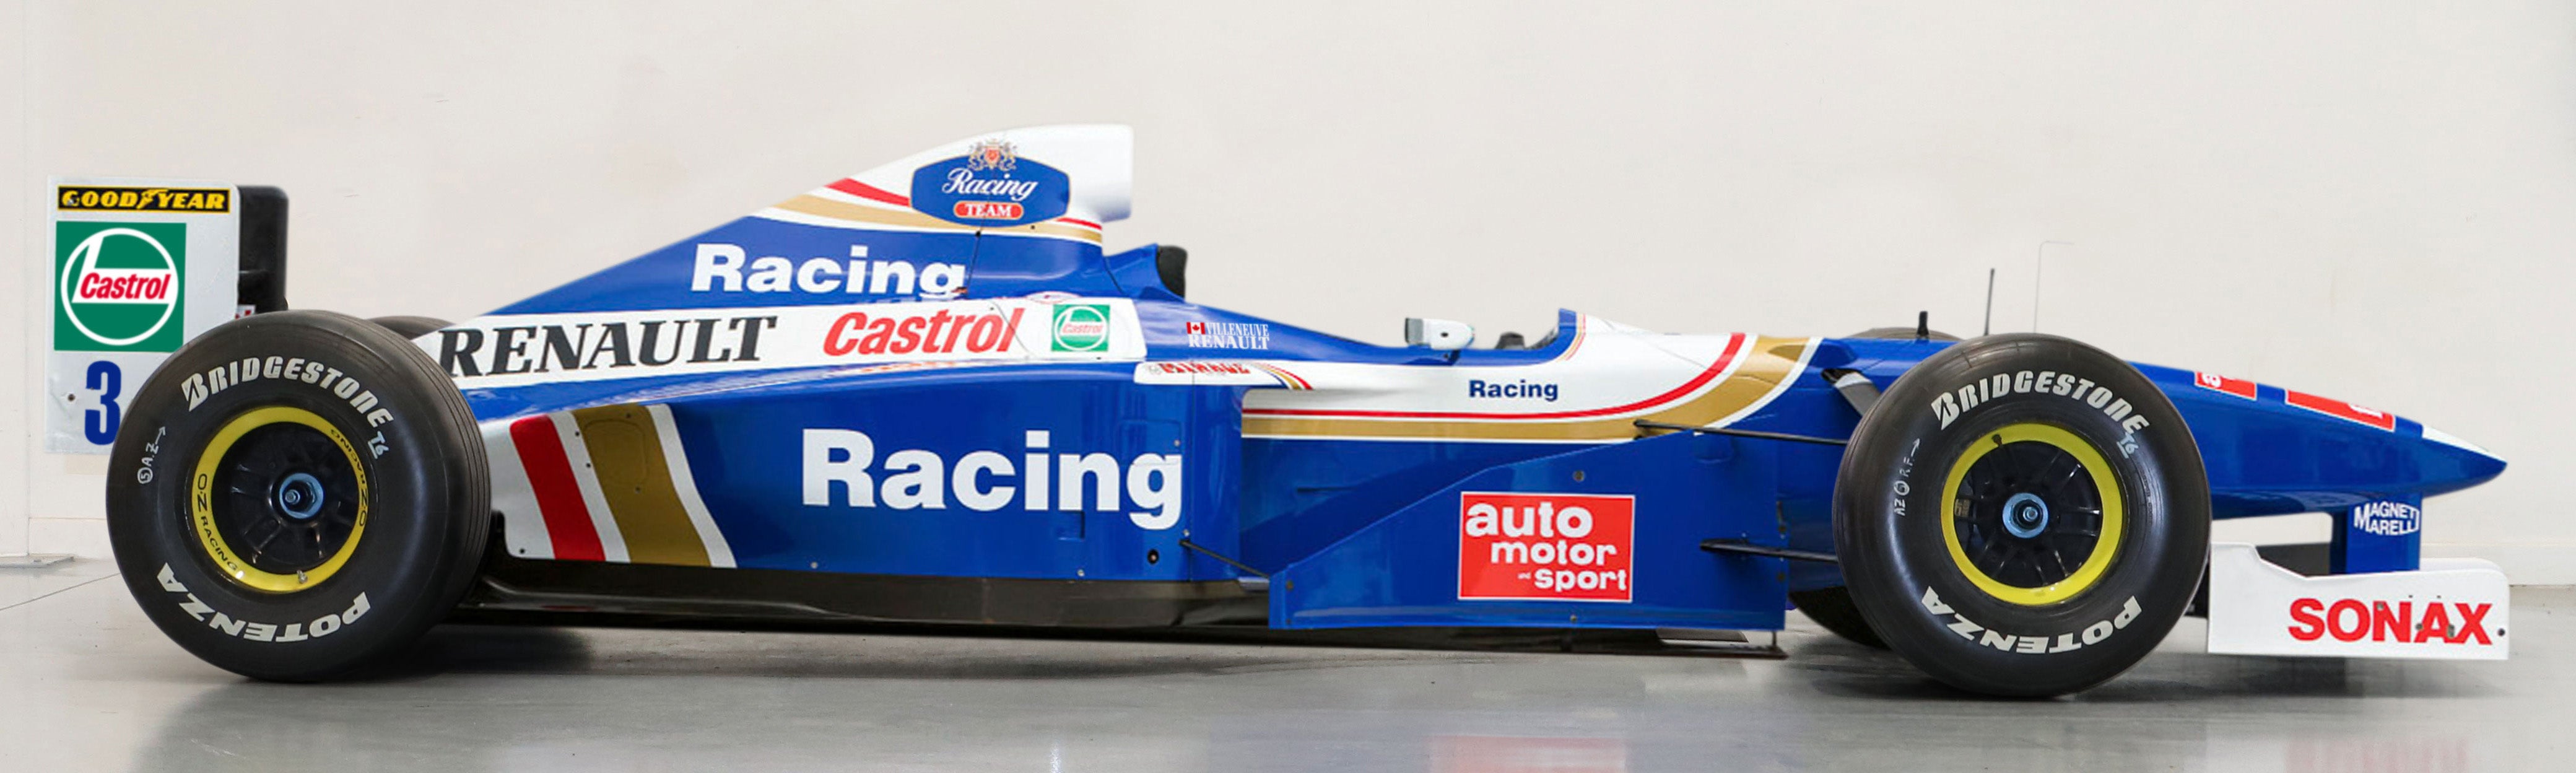 1997 Williams FW19 Jacques Villeneuve Championship Winning Official Show Car